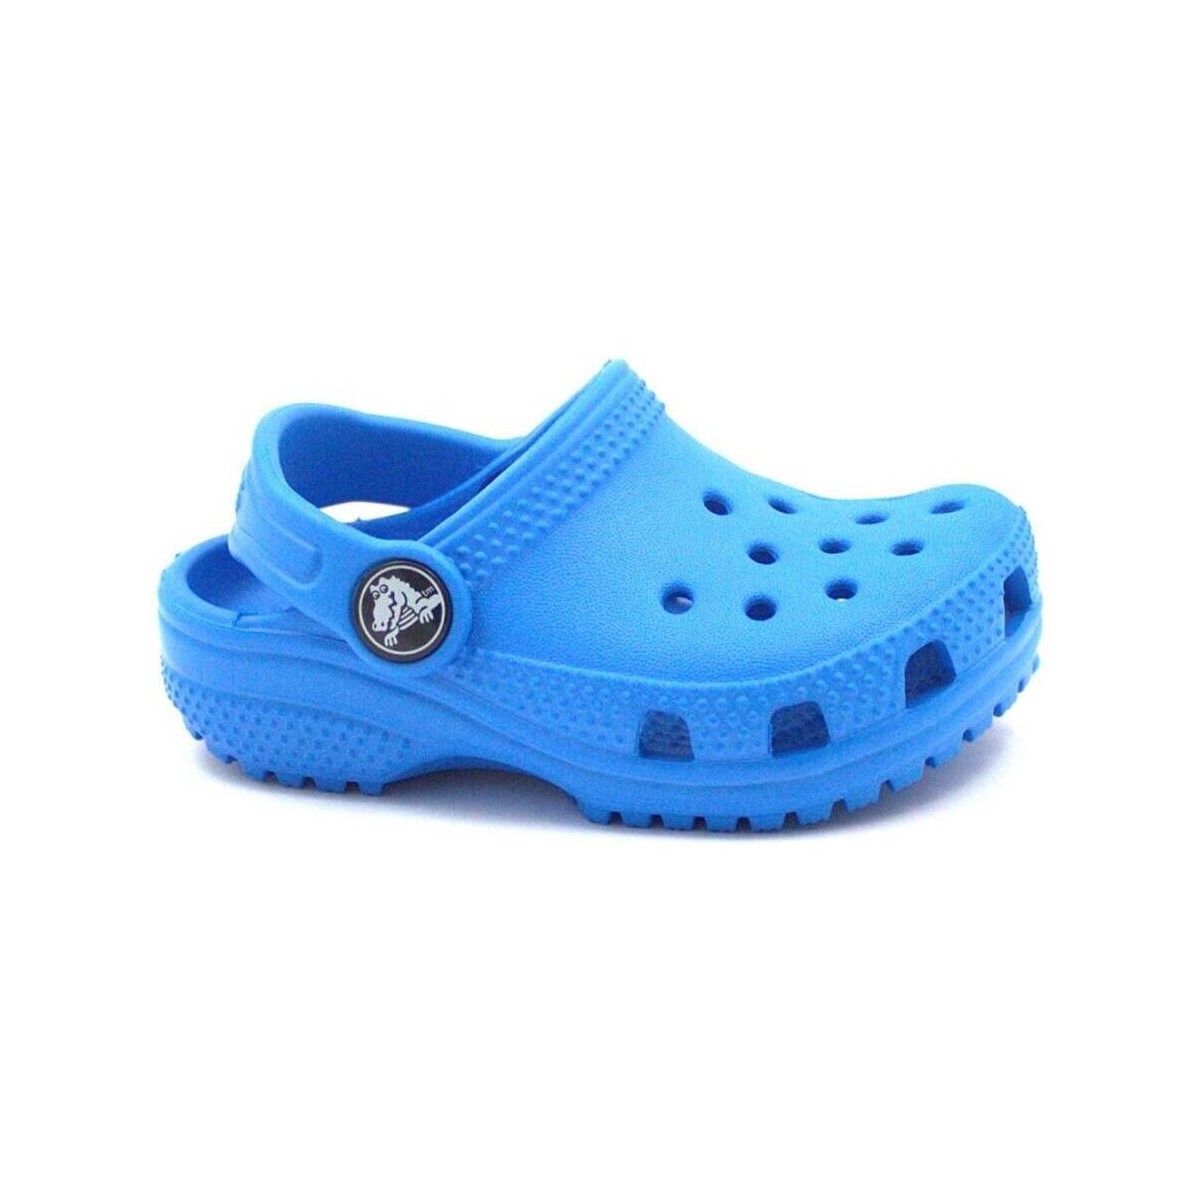 Sapatos Criança Chinelos Crocs CRO-RRR-206990-456 Azul